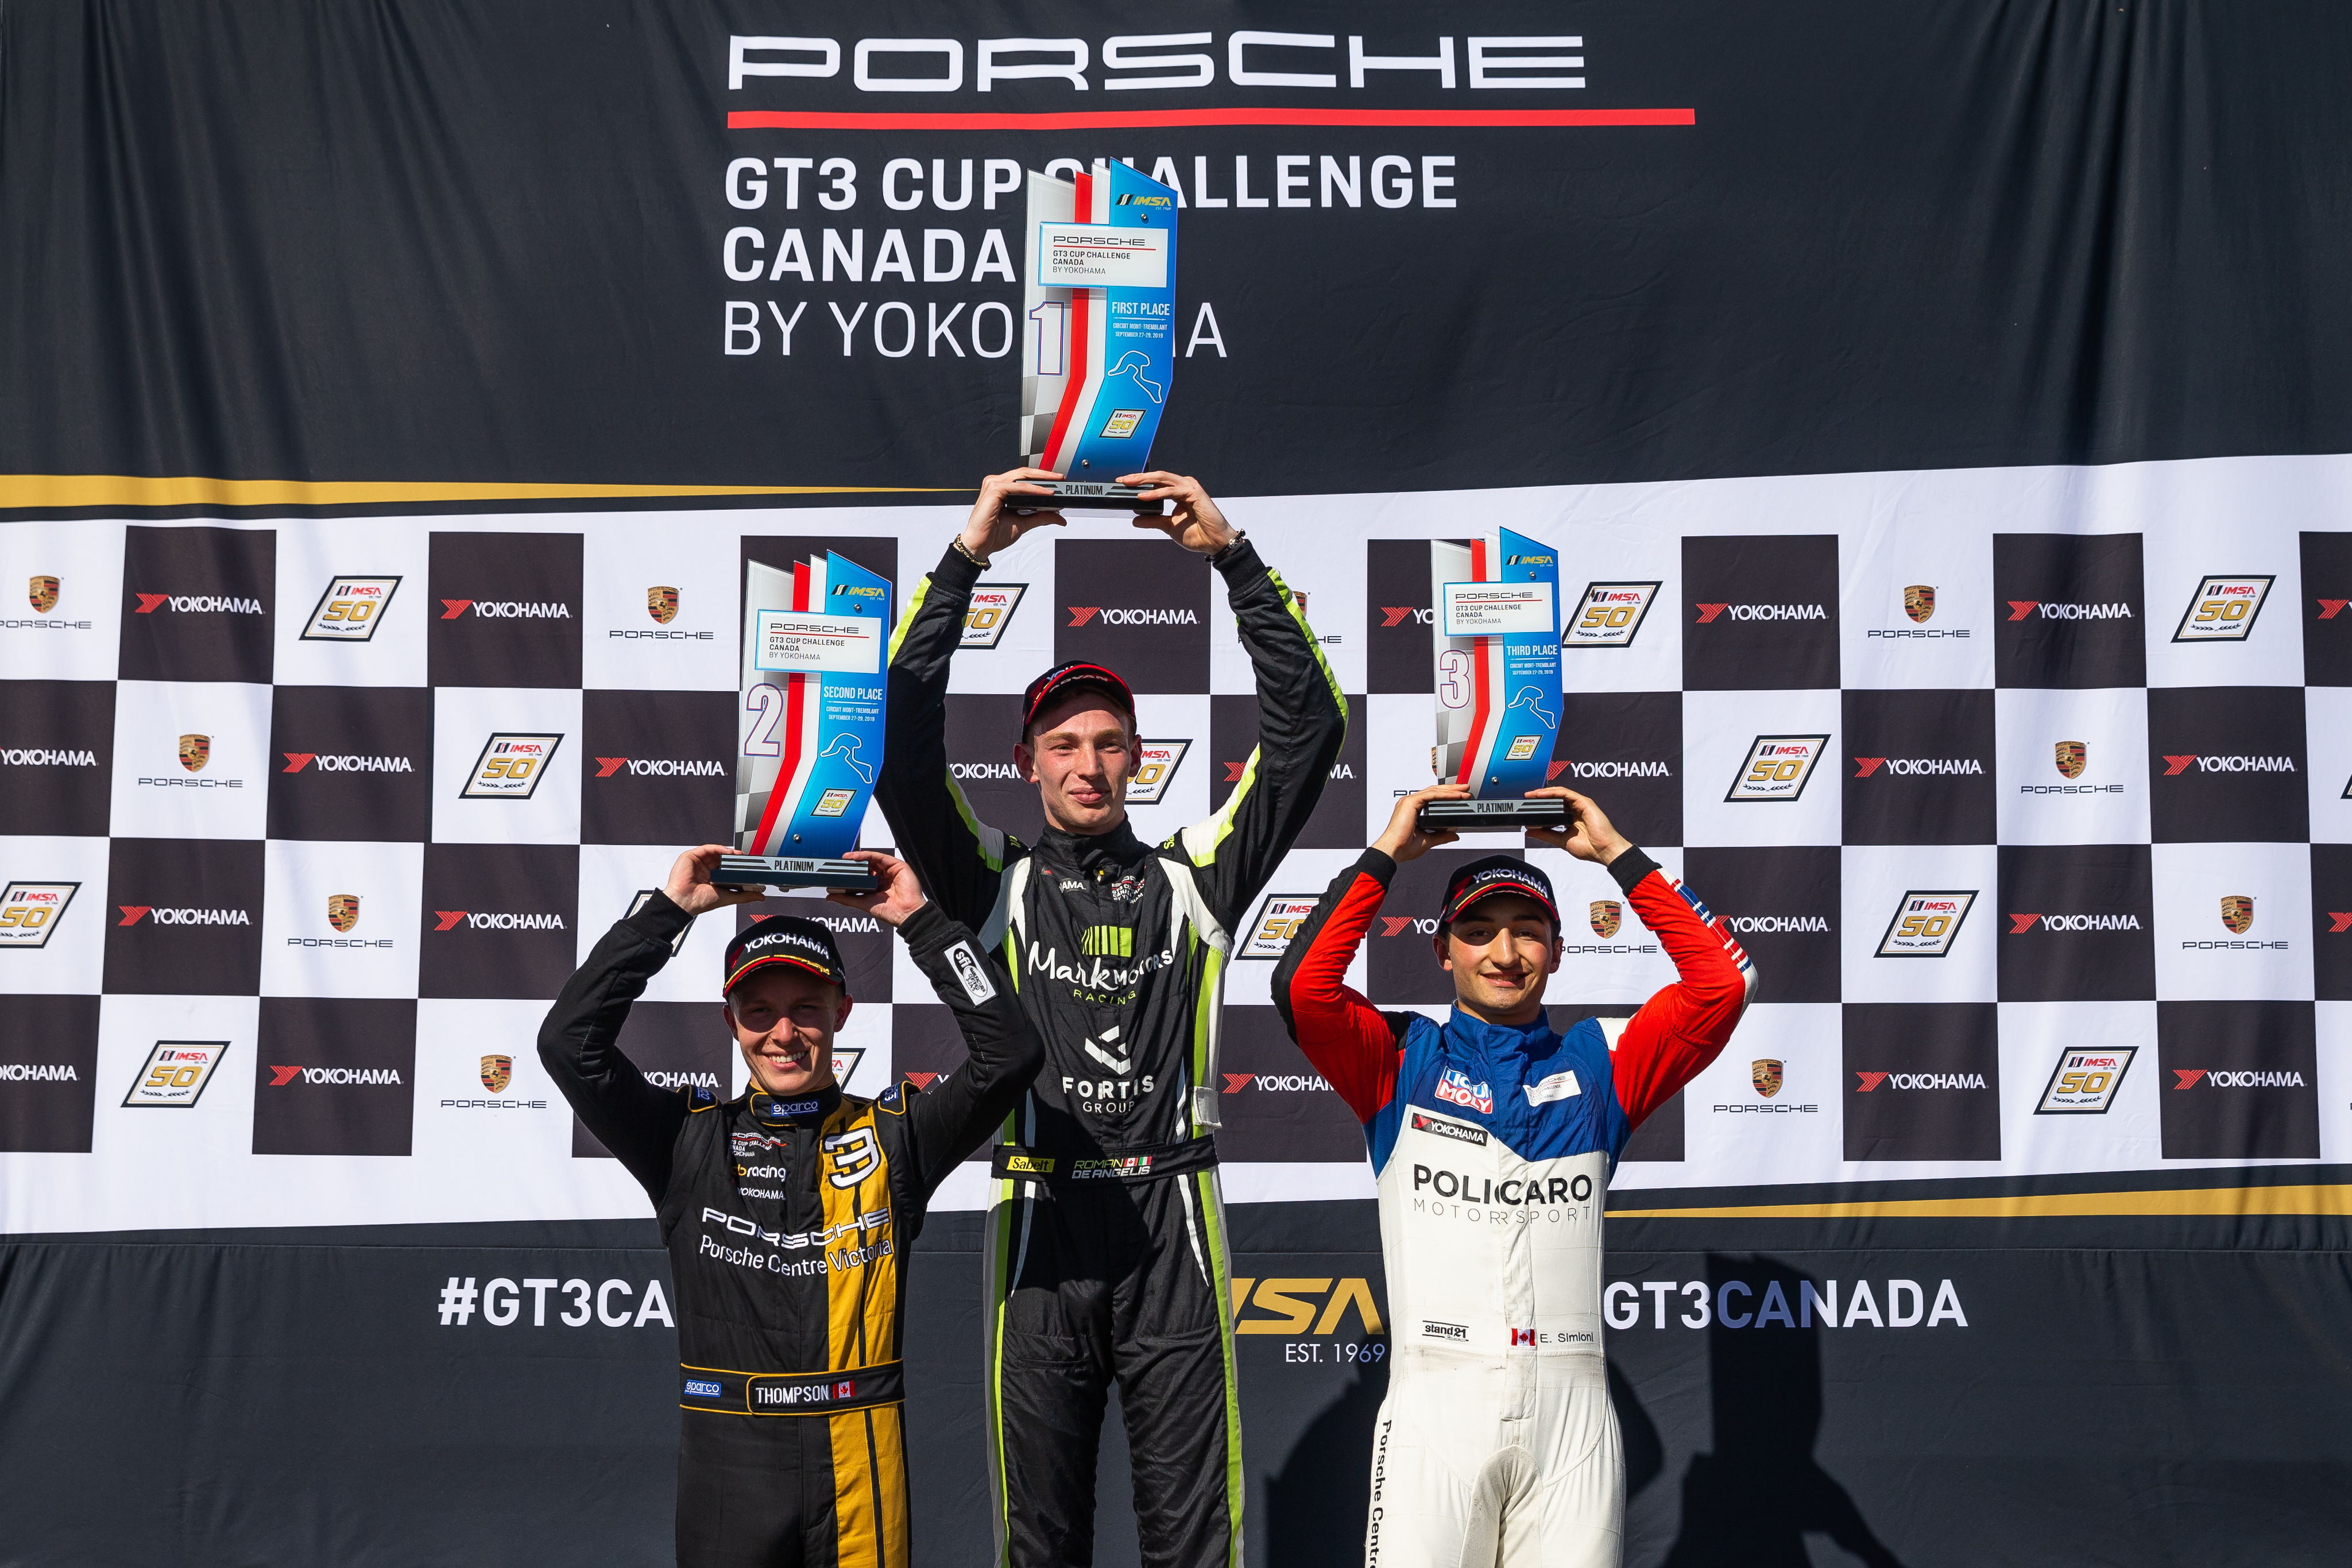 Le weekend dernier, la série Porsche GT3 Cup Challenge Canada présentée par Yokohama s’est arrêtée au célèbre Circuit Mont-Tremblant pour y disputer les deux dernières courses de la saison.